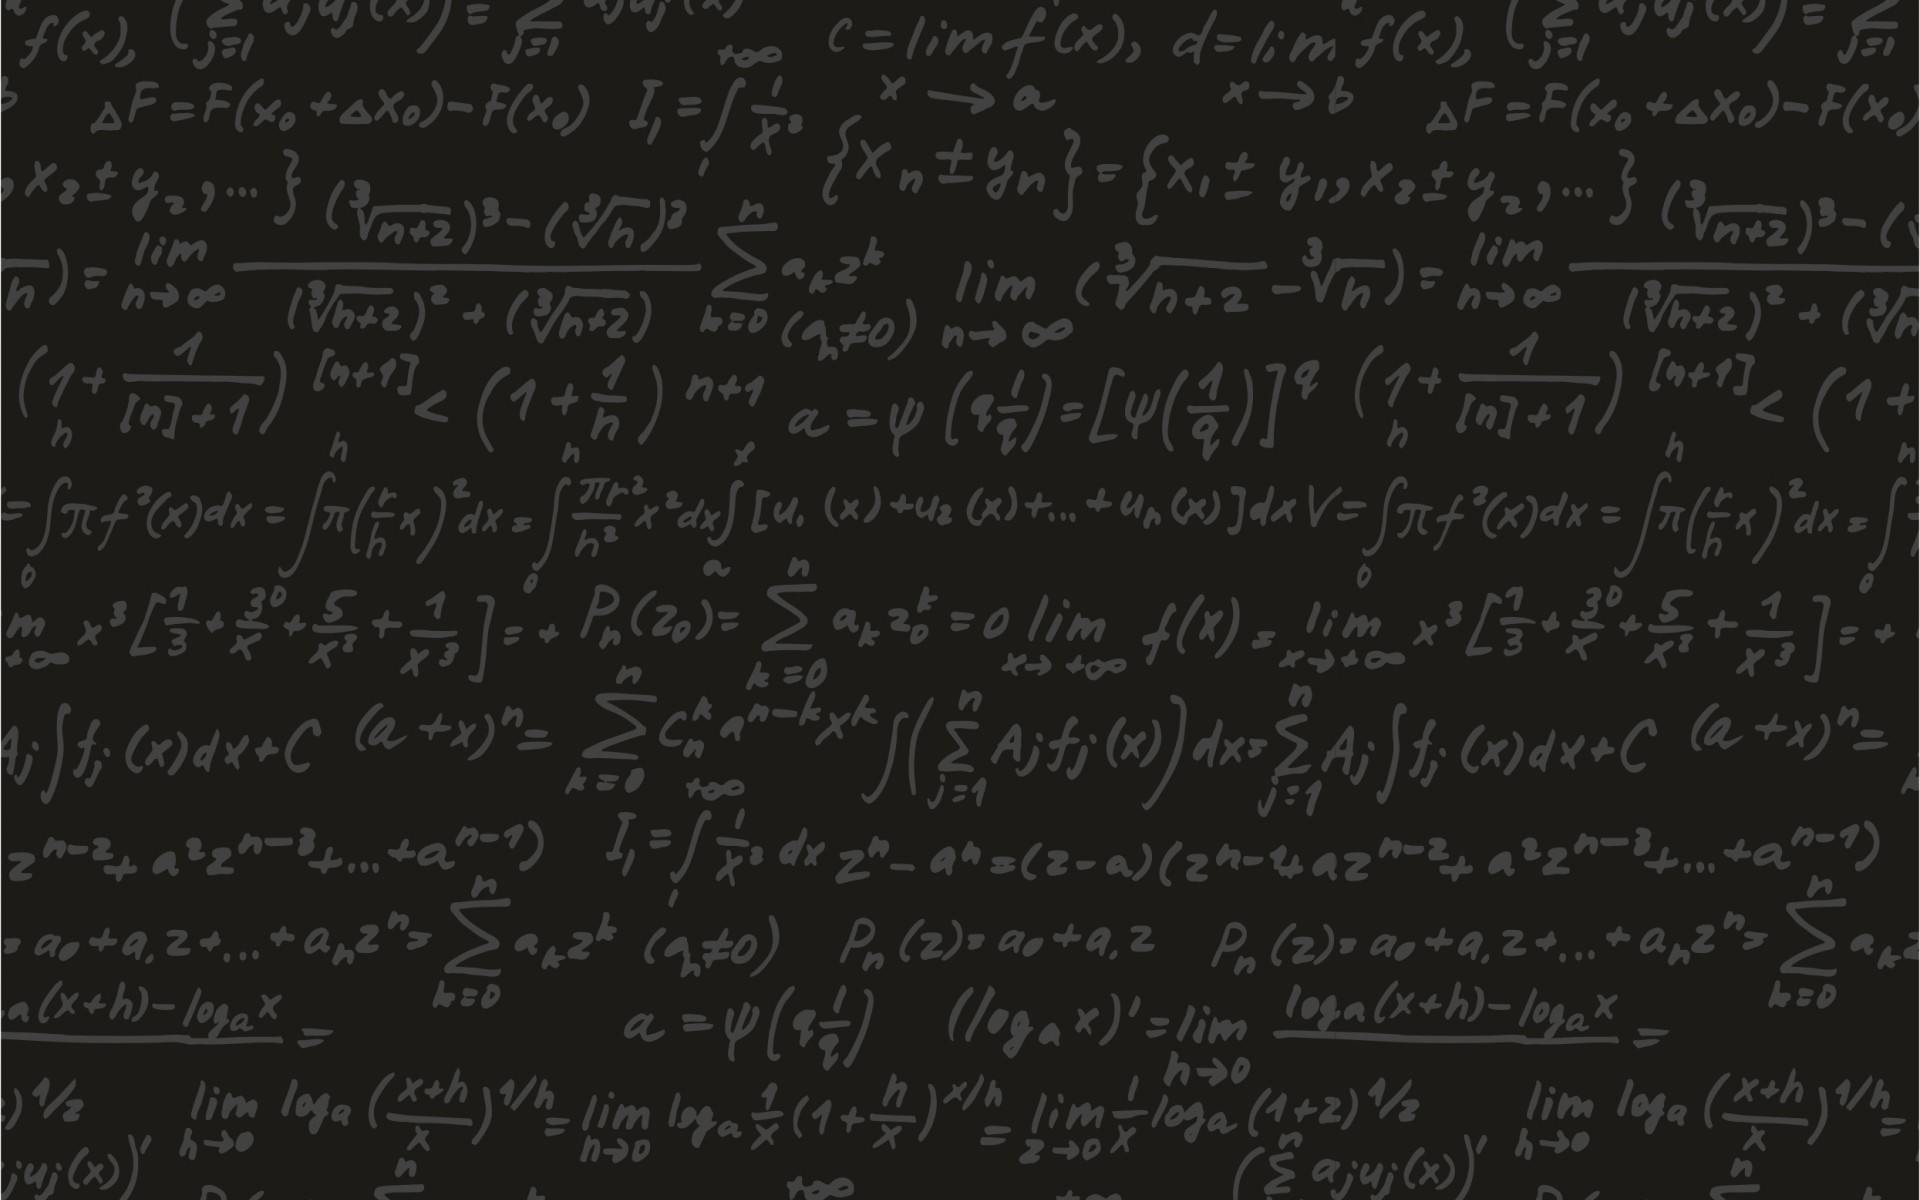 mathematics wallpaper for desktop